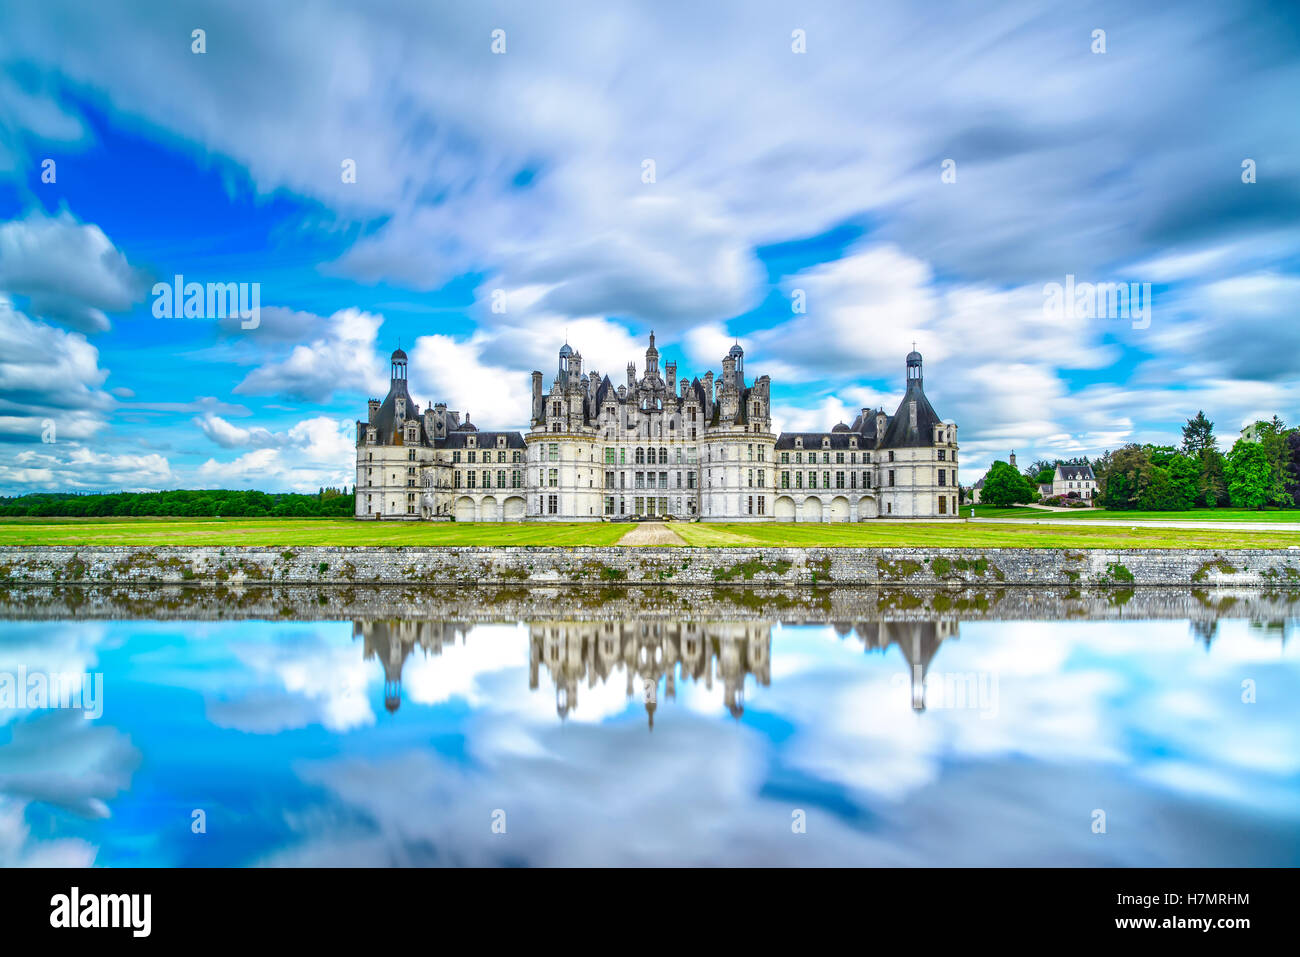 Château de Chambord, royal medieval castillo francés y la reflexión. El Valle del Loira, Francia, Europa. Patrimonio de la humanidad por la Unesco. Foto de stock